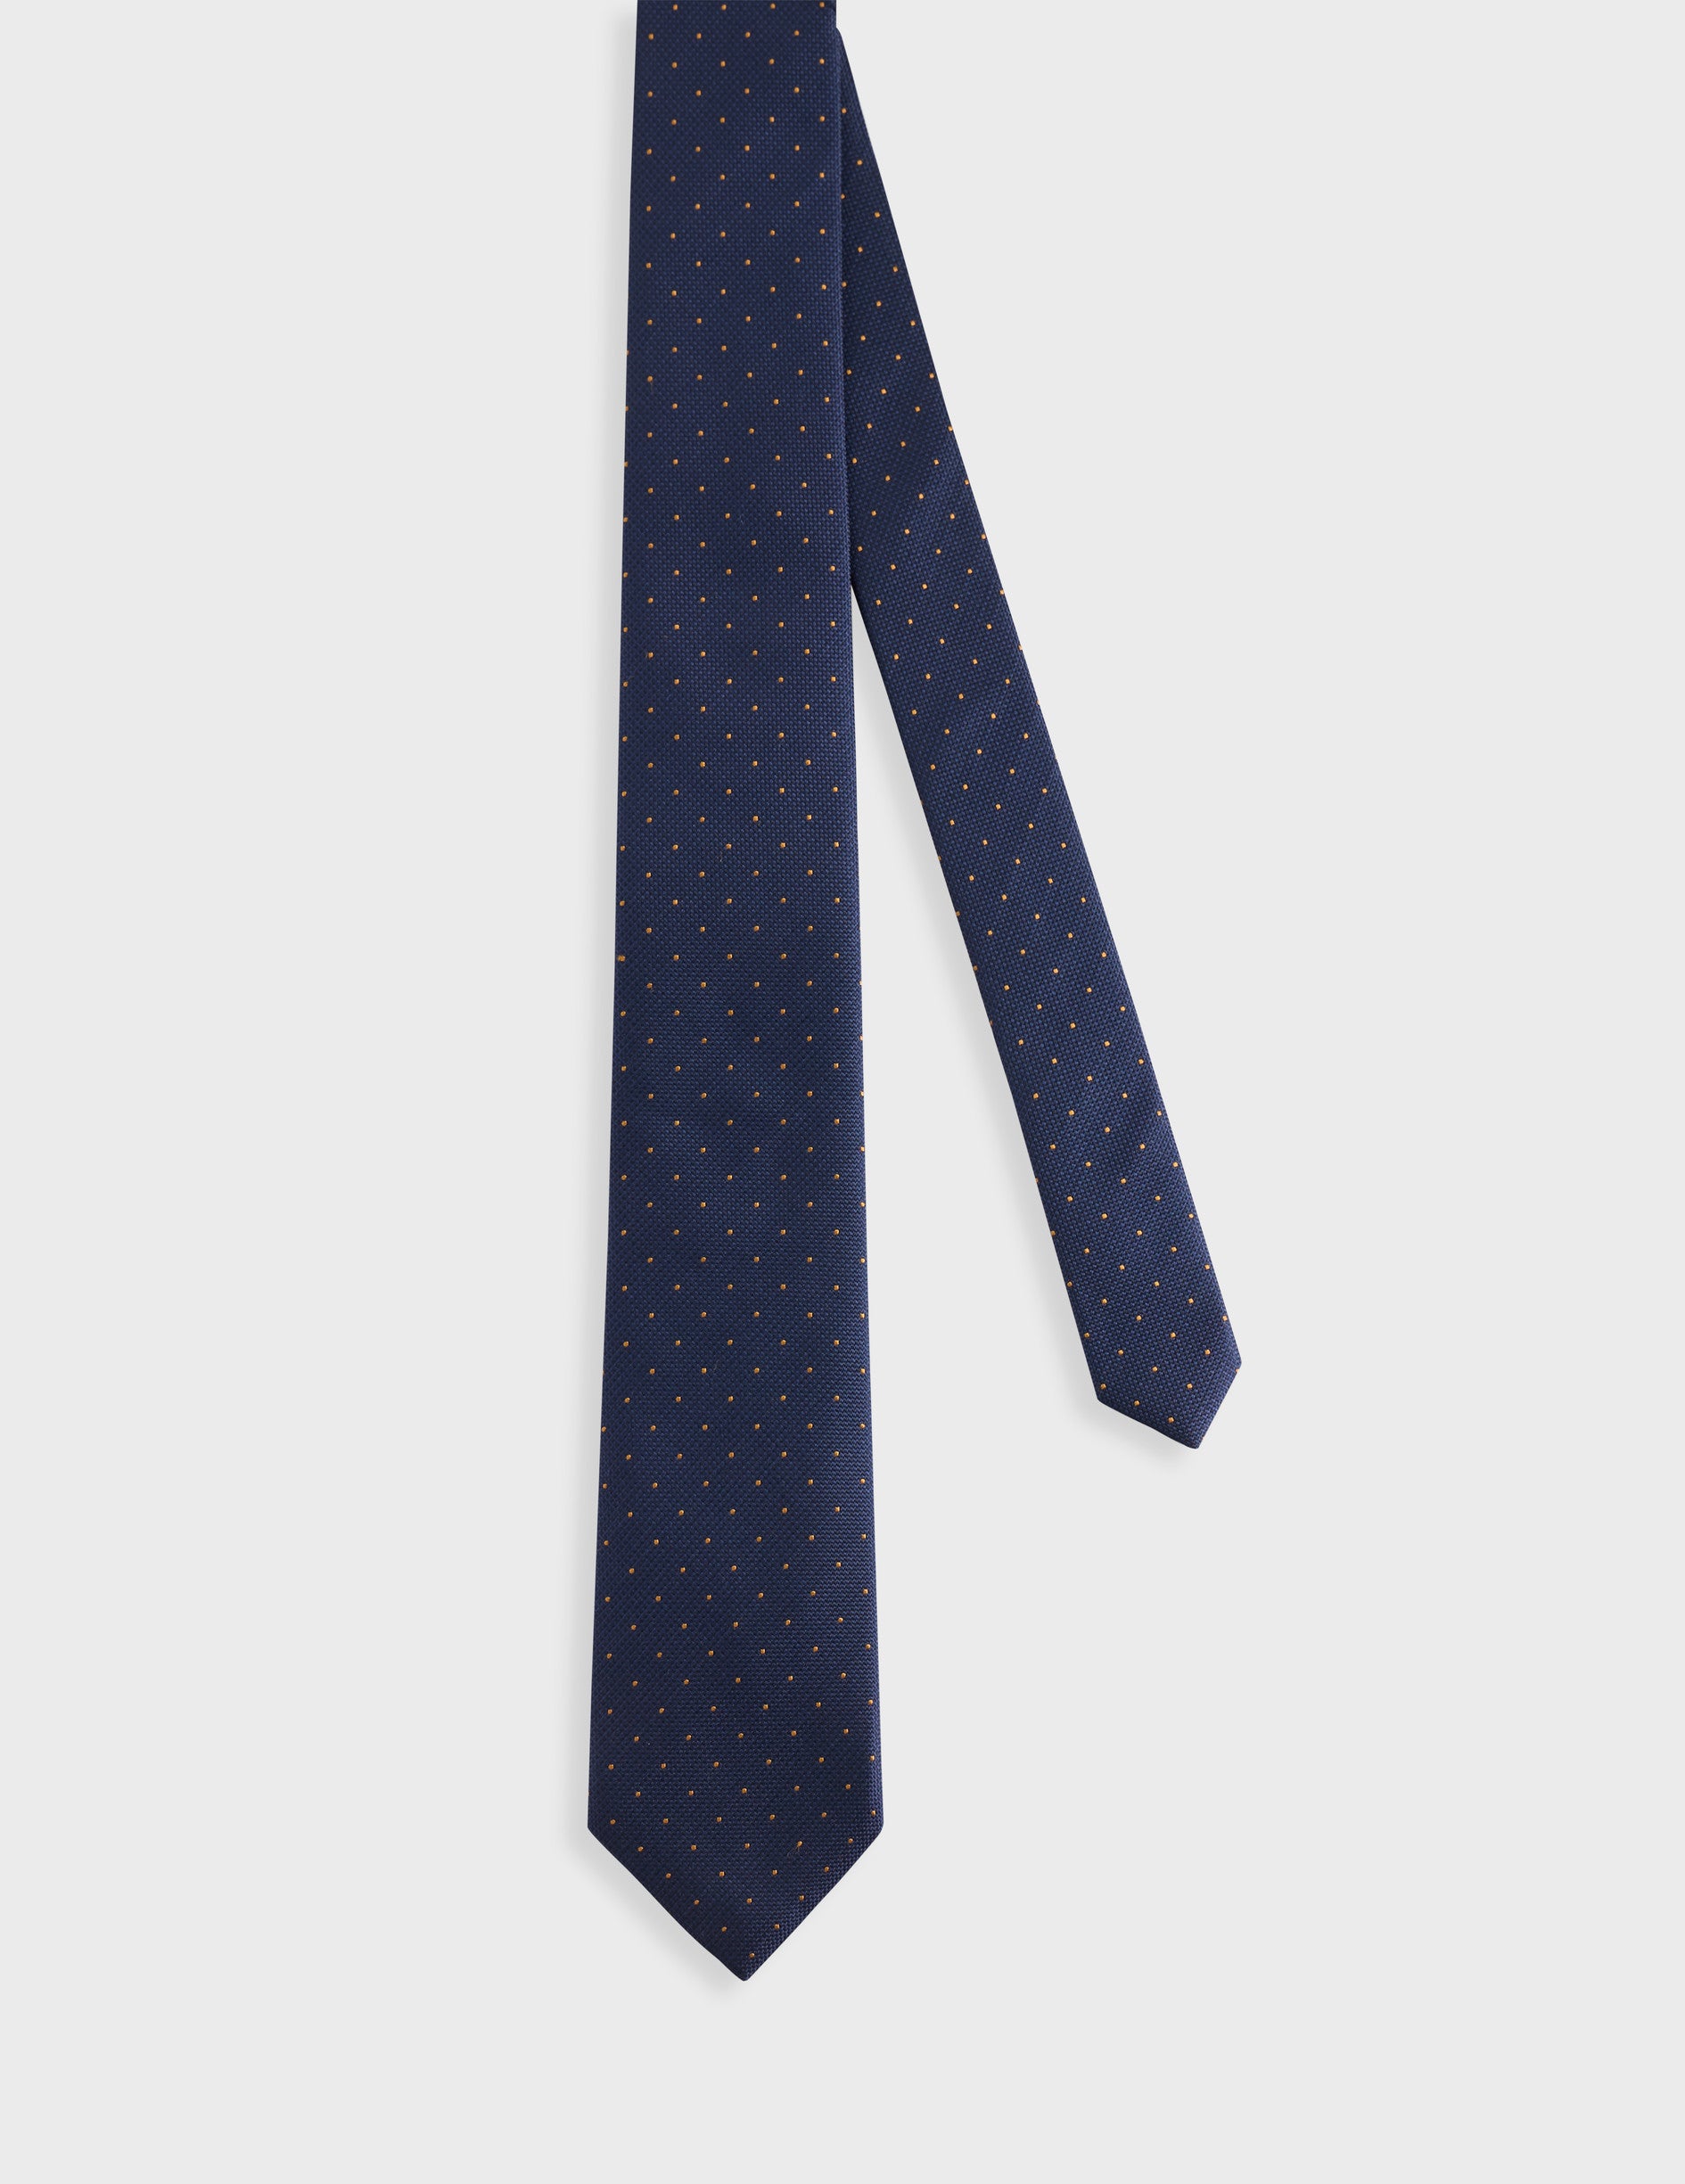 Cravate en soie marine à motifs